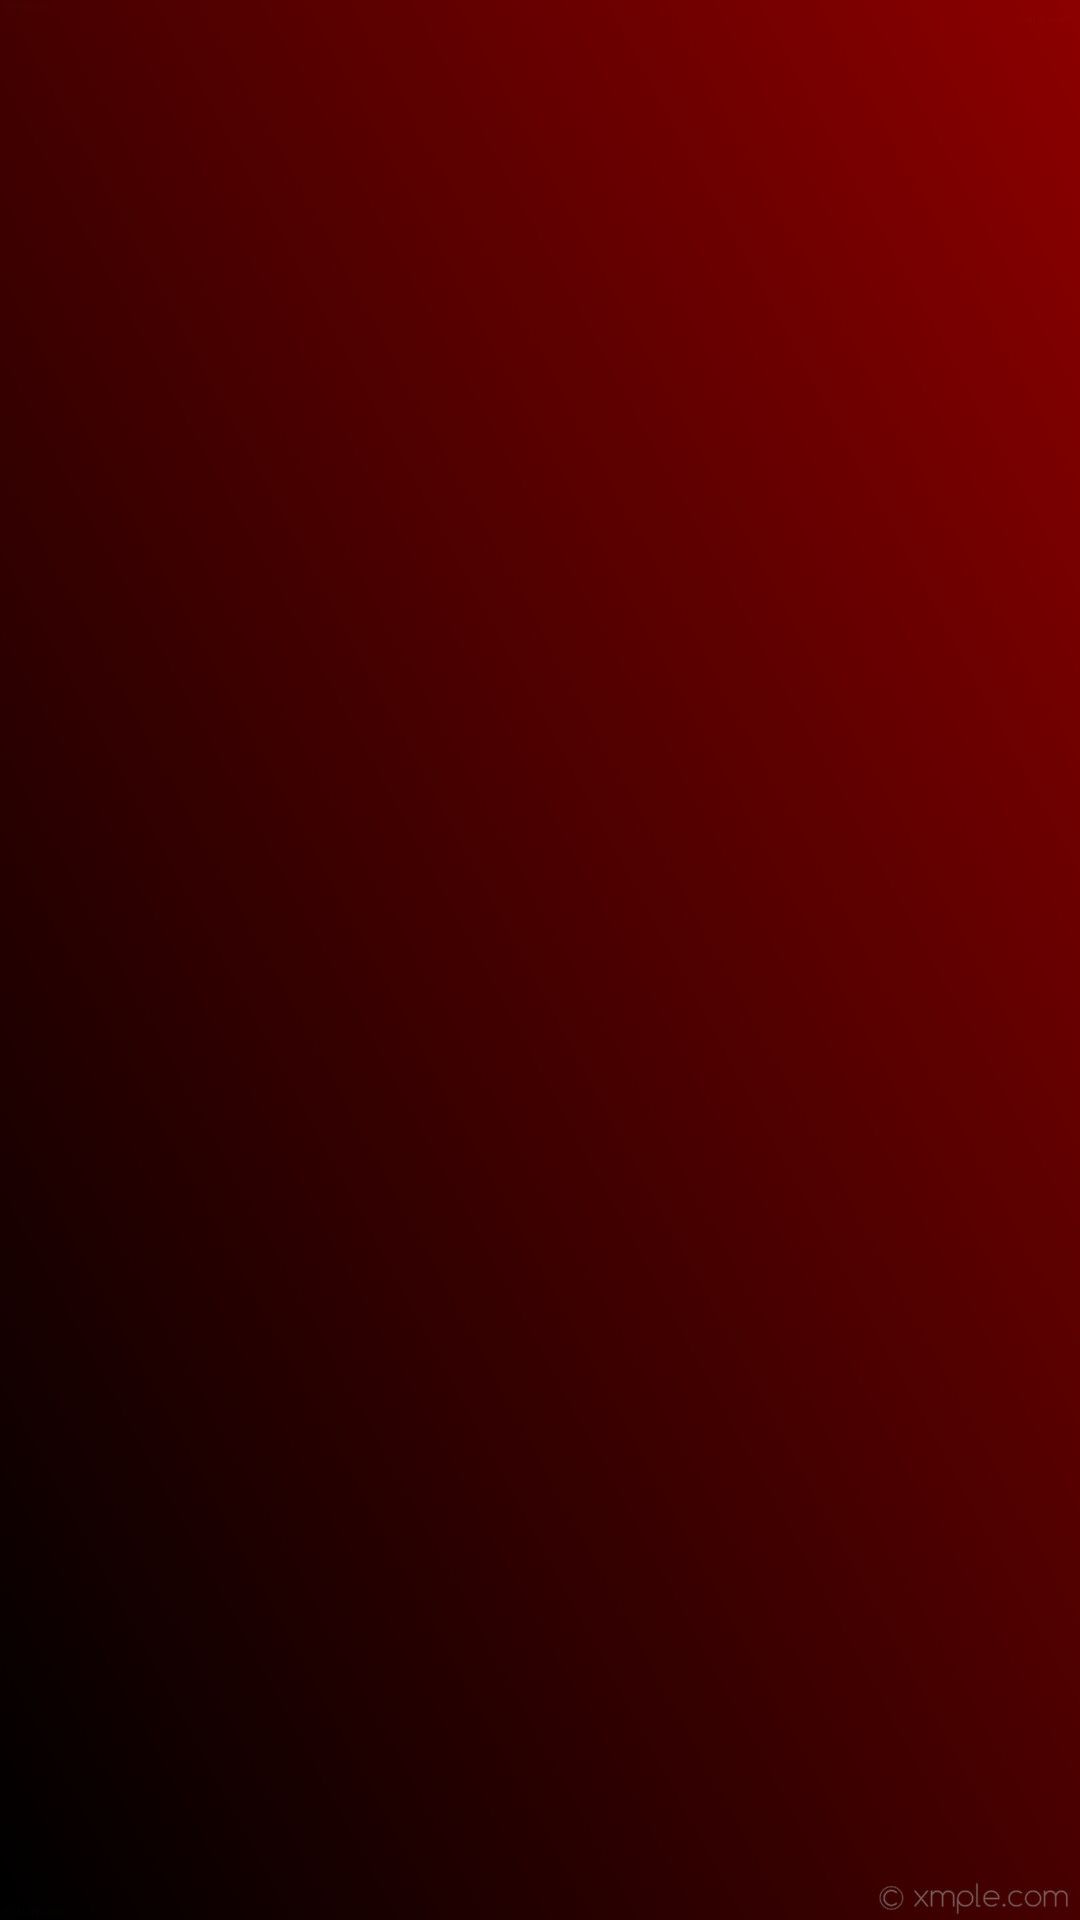 Không gian trên màn hình iPhone của bạn sẽ trở nên độc đáo và cuốn hút hơn với những hình nền iPhone đỏ đen ấn tượng trên WallpaperDog. Bạn sẽ không cần phải tốn nhiều thời gian để tìm kiếm, vì WallpaperDog đã cung cấp đầy đủ các mẫu thiết kế độc đáo cho bạn chọn lựa.